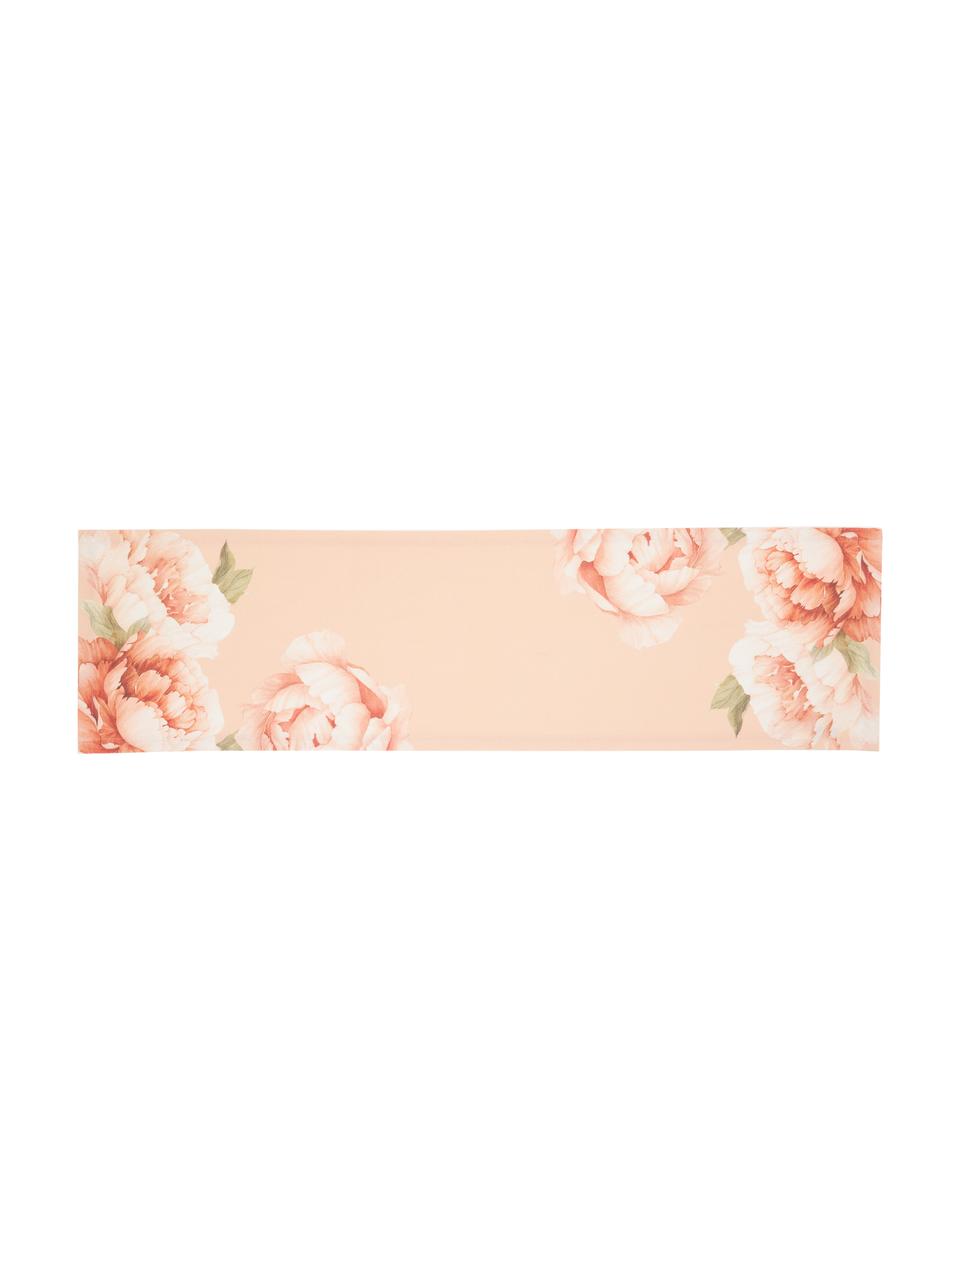 Bieżnik z bawełny Peony, 100% bawełna, Blady różowy, z motywem kwiatów, S 40 x D 145 cm